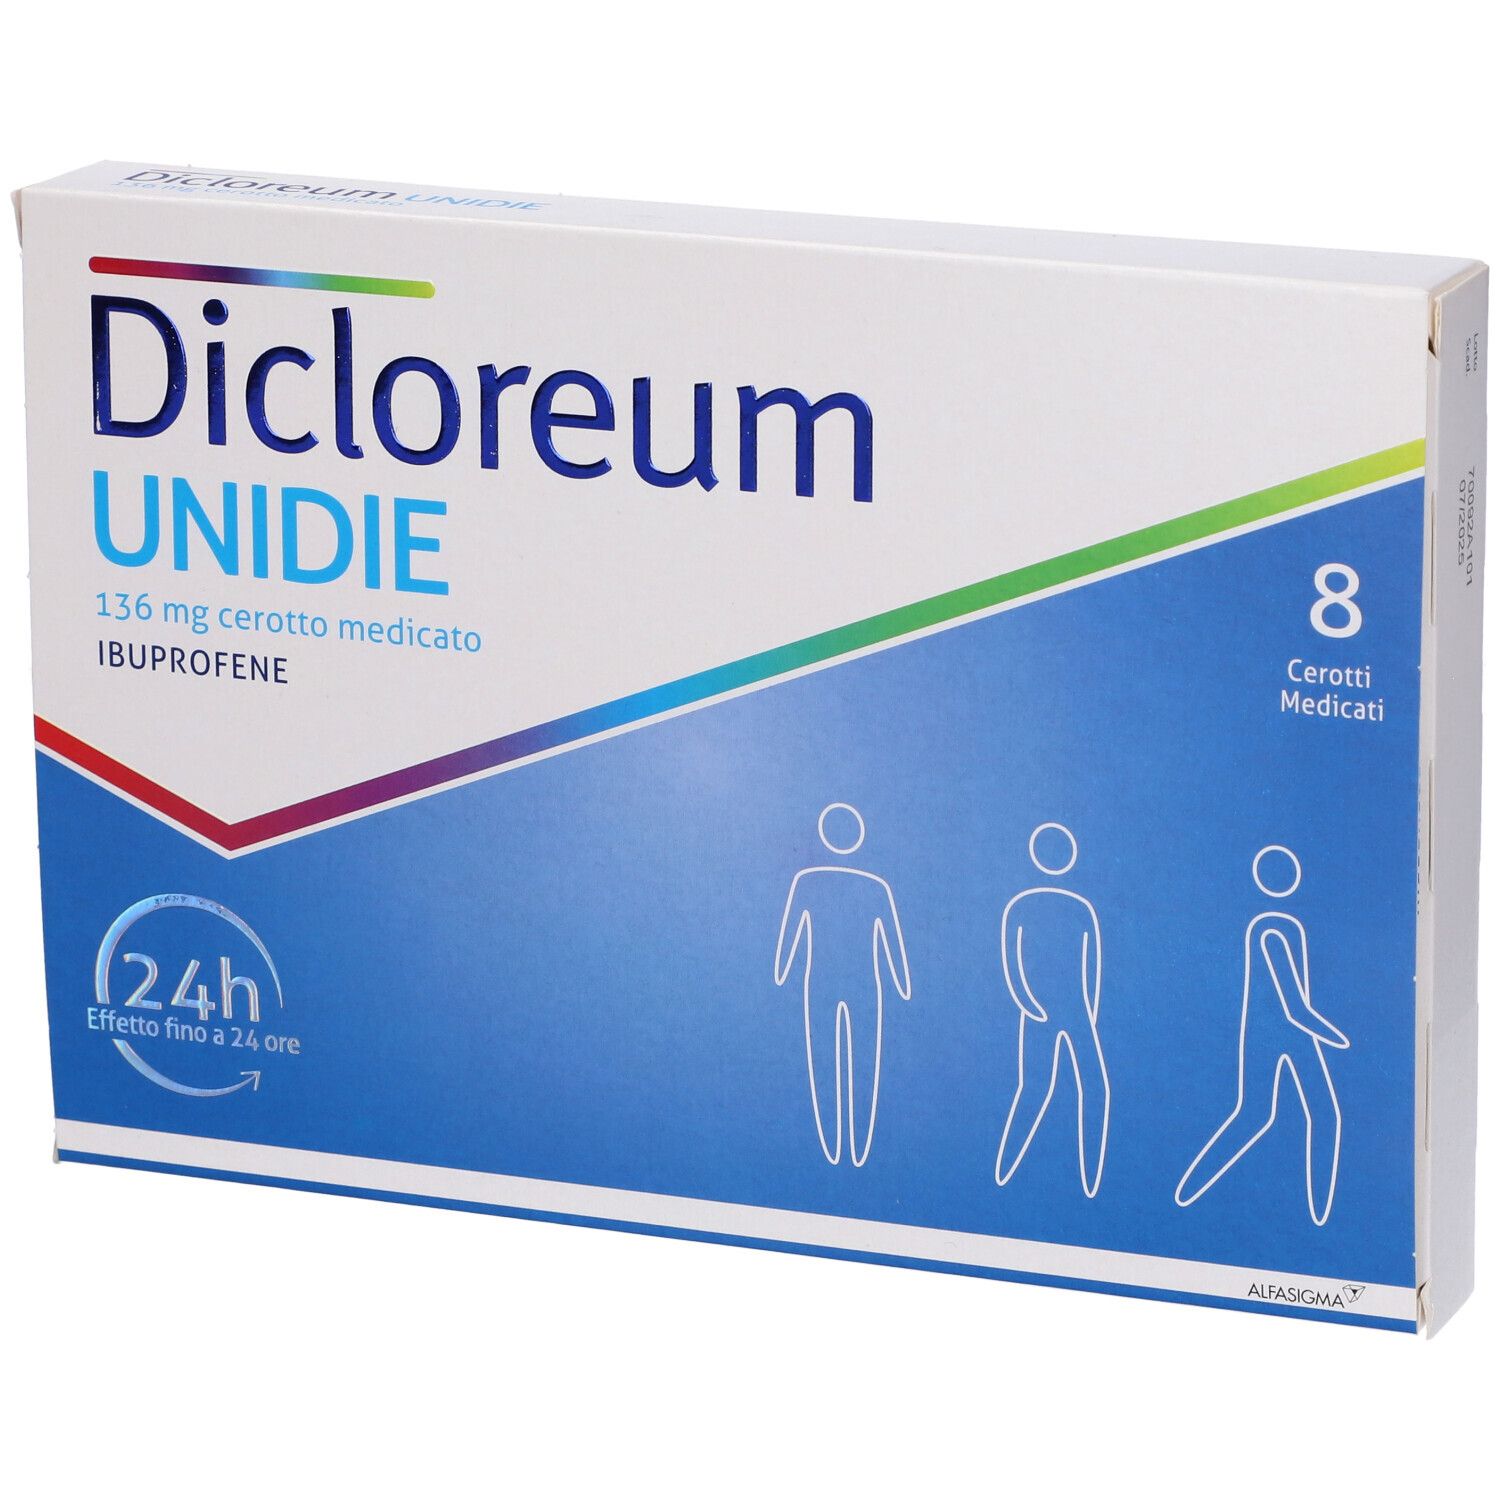 Dicloreum Unidie 136 mg Cerotto medicato